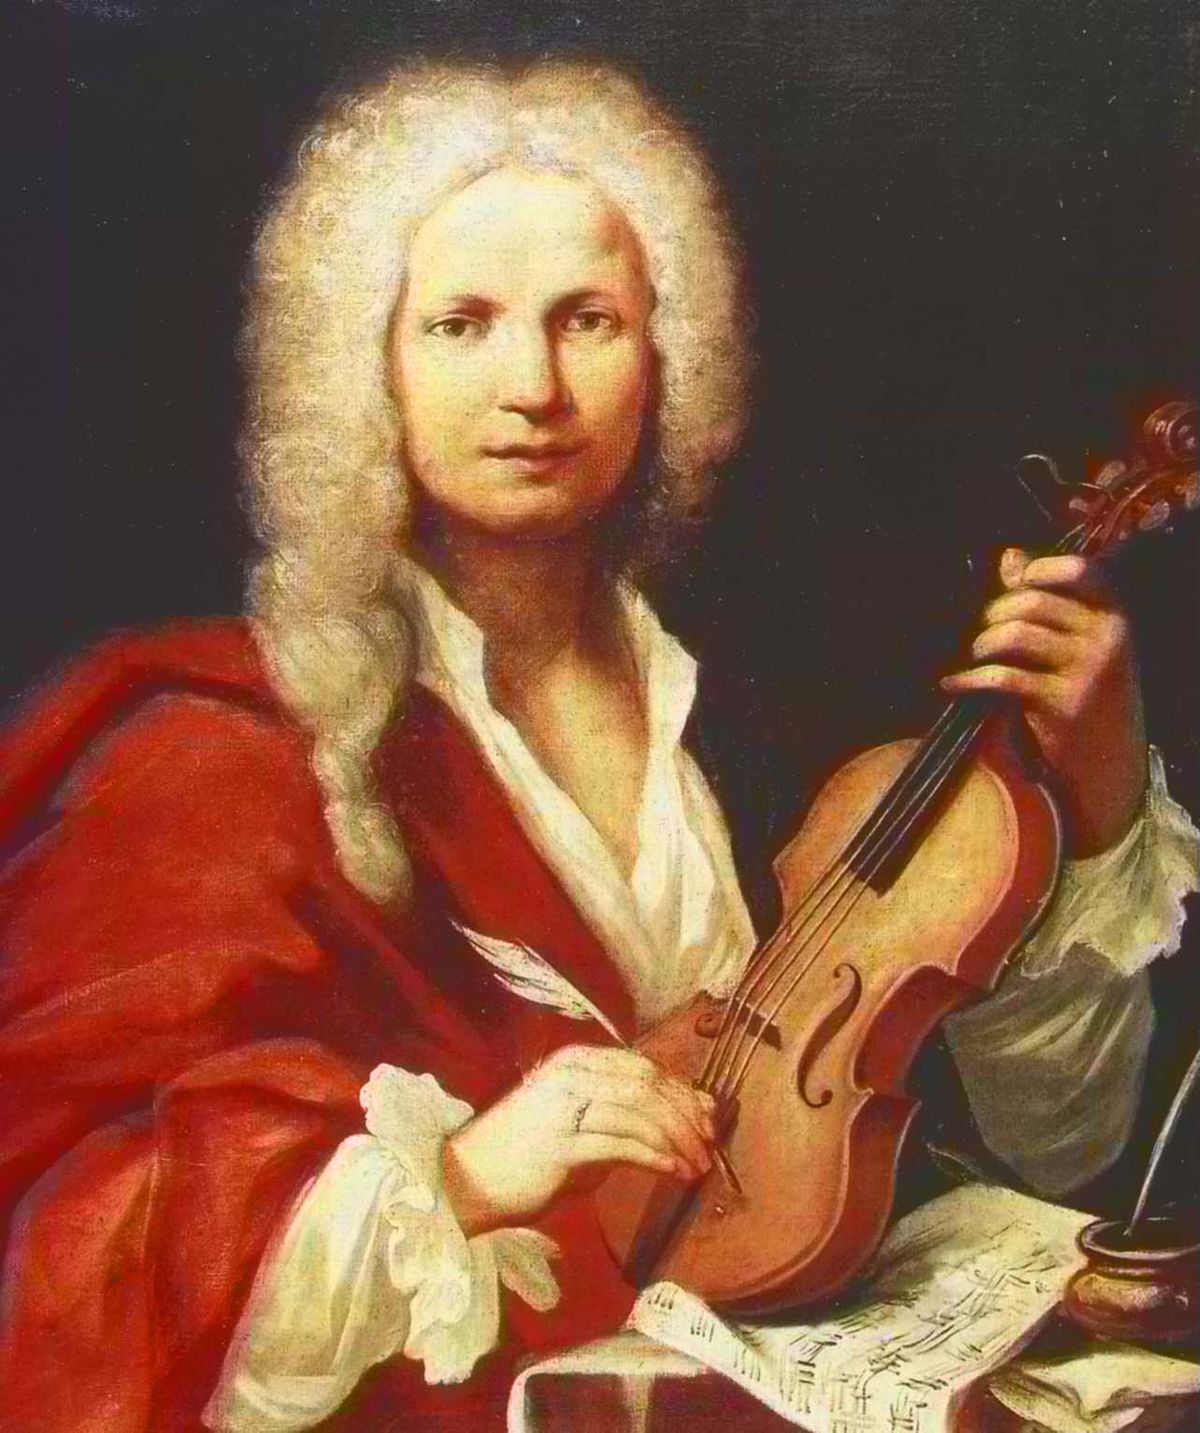 Antonio Vivaldi de Rode Priester